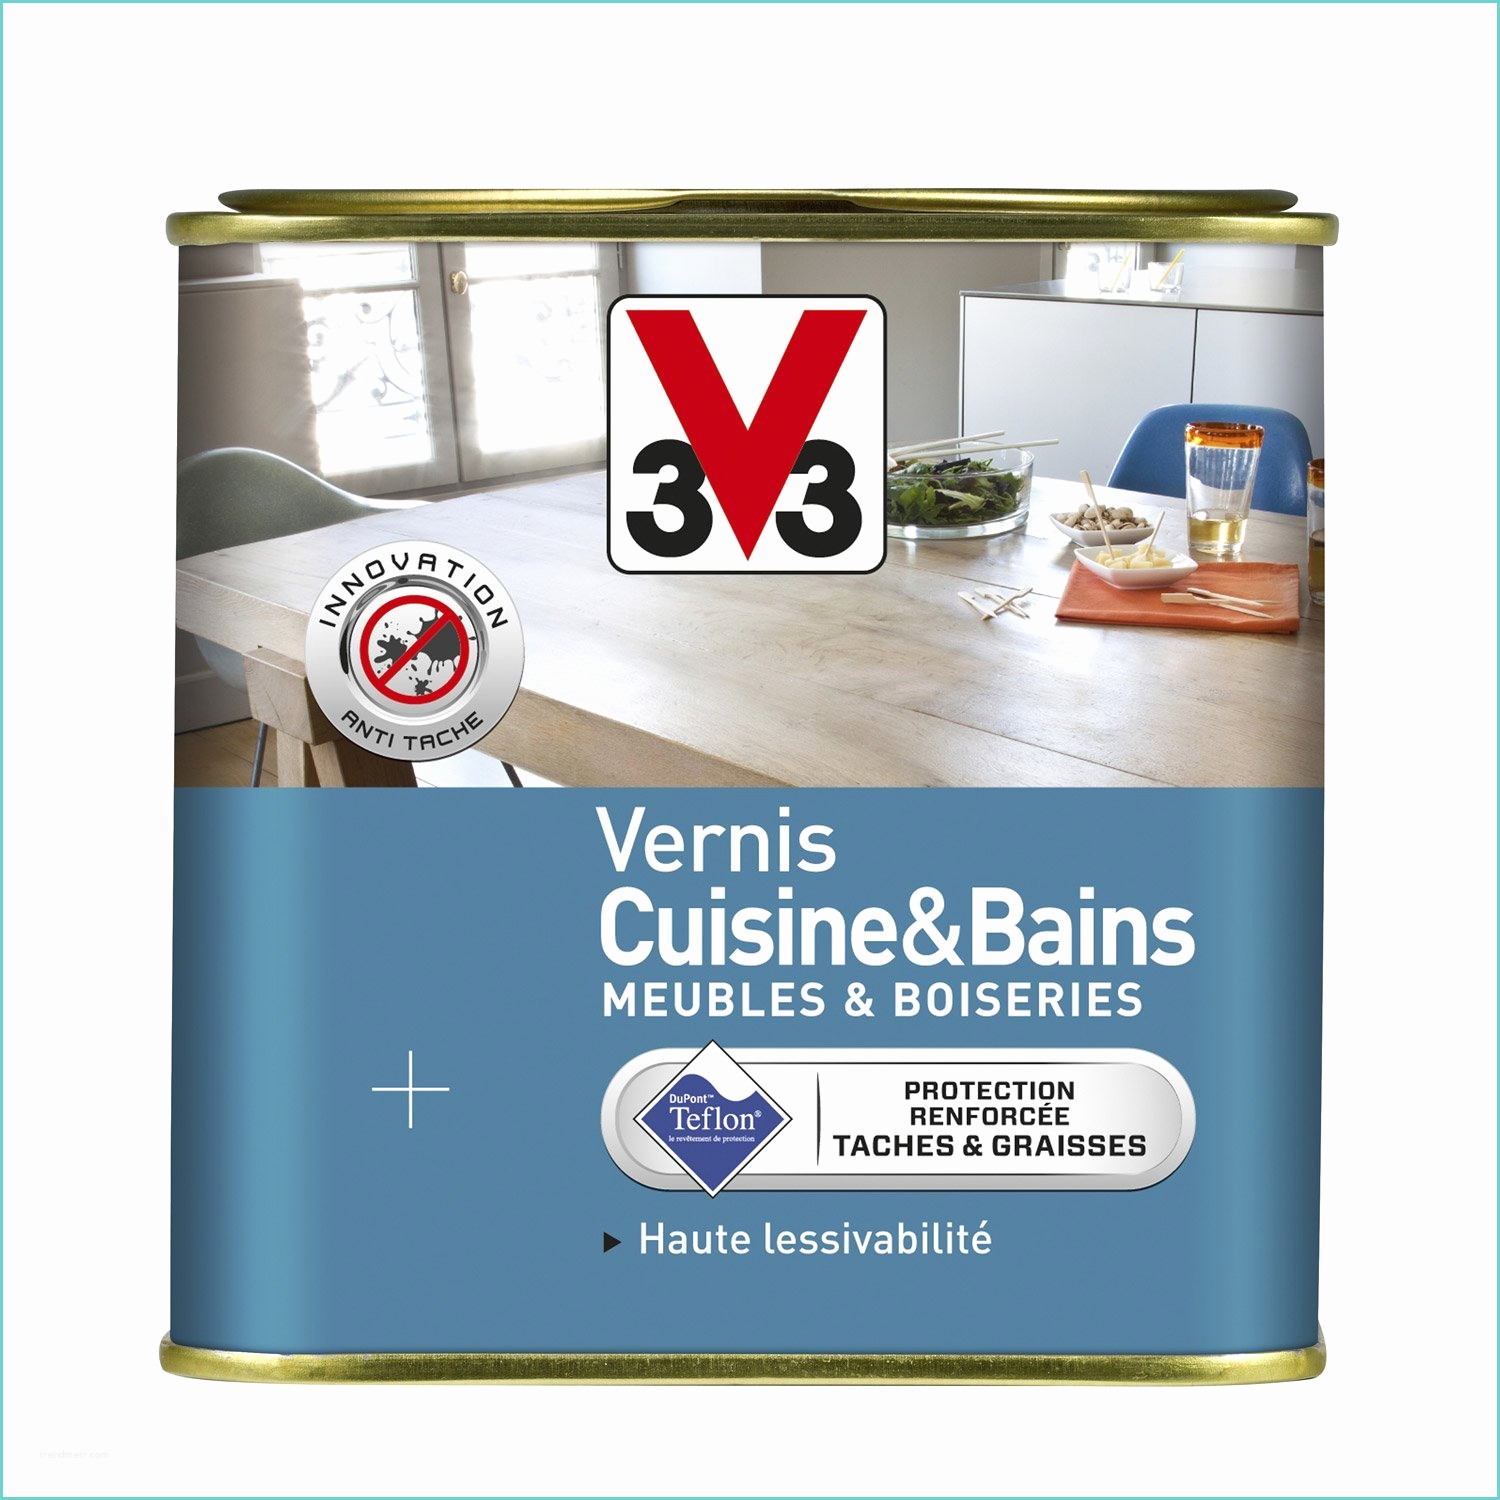 Peinture Lambris Vernis Leroy Merlin Vernis Cuisine Et Bain V33 0 75 L Incolore